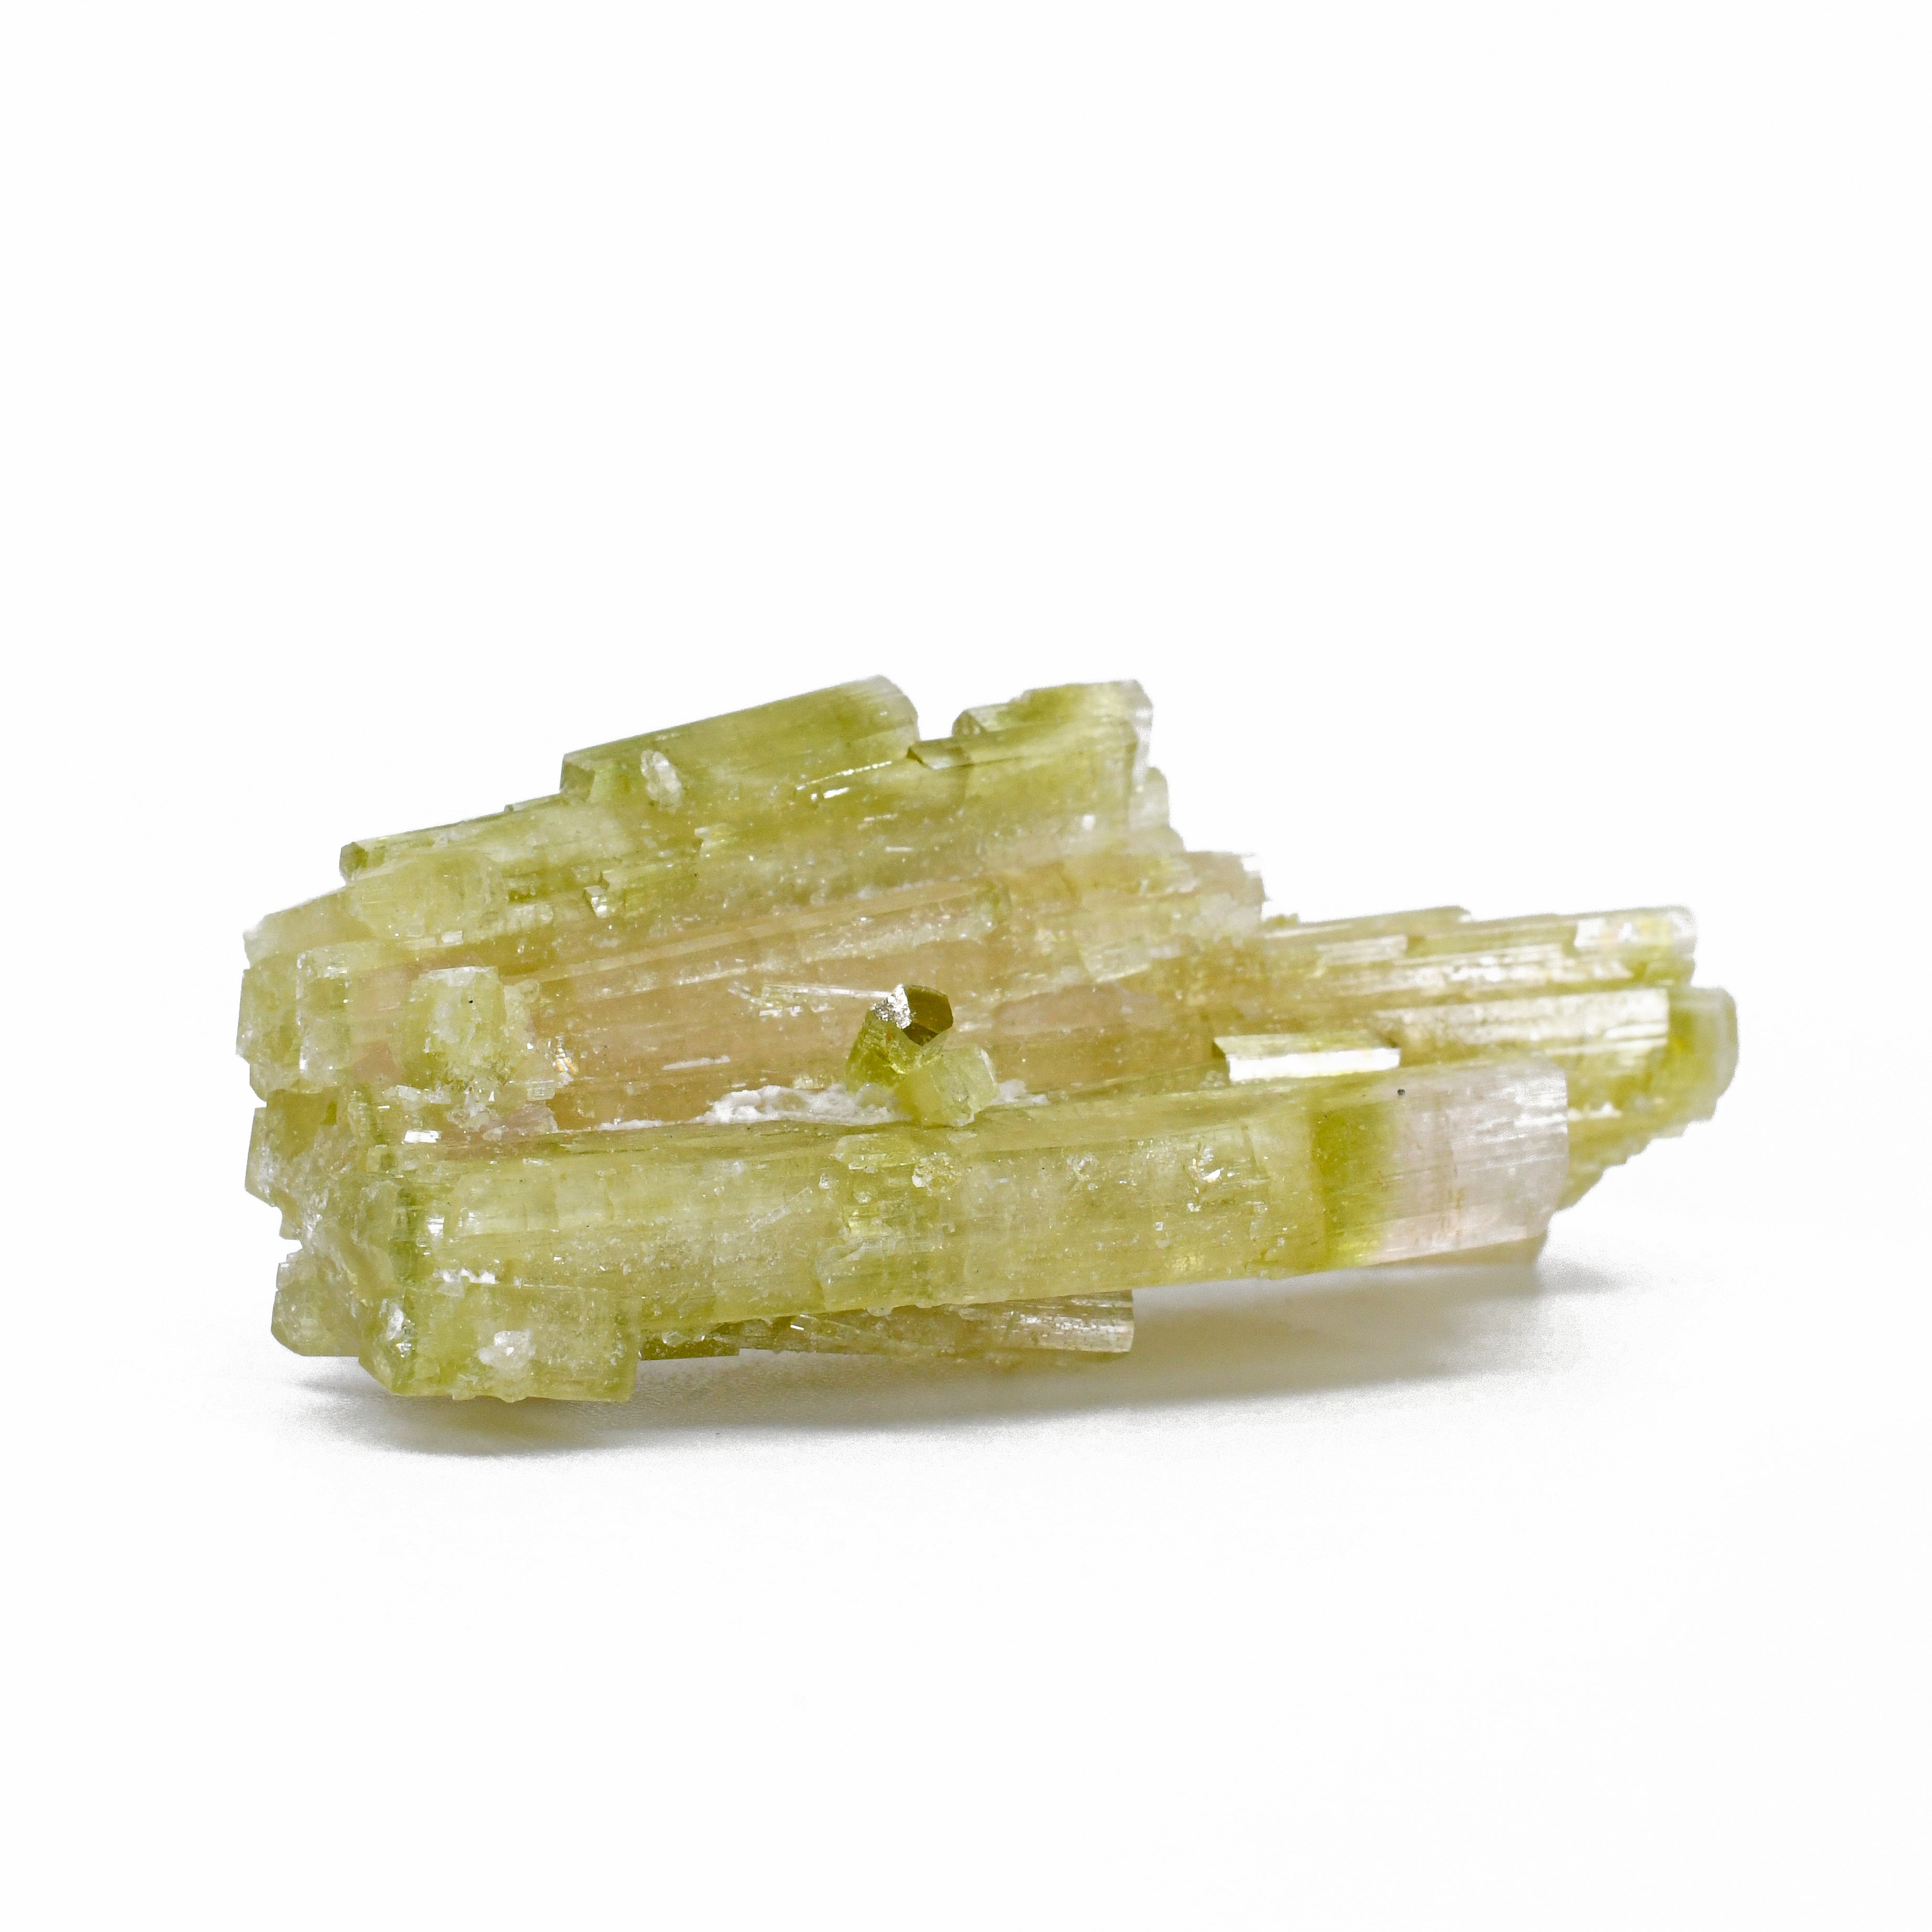 Green and Pink Tourmaline 1.94 inch 77 carat Gem Crystal Spray Specimen - BBX-369 - Crystalarium